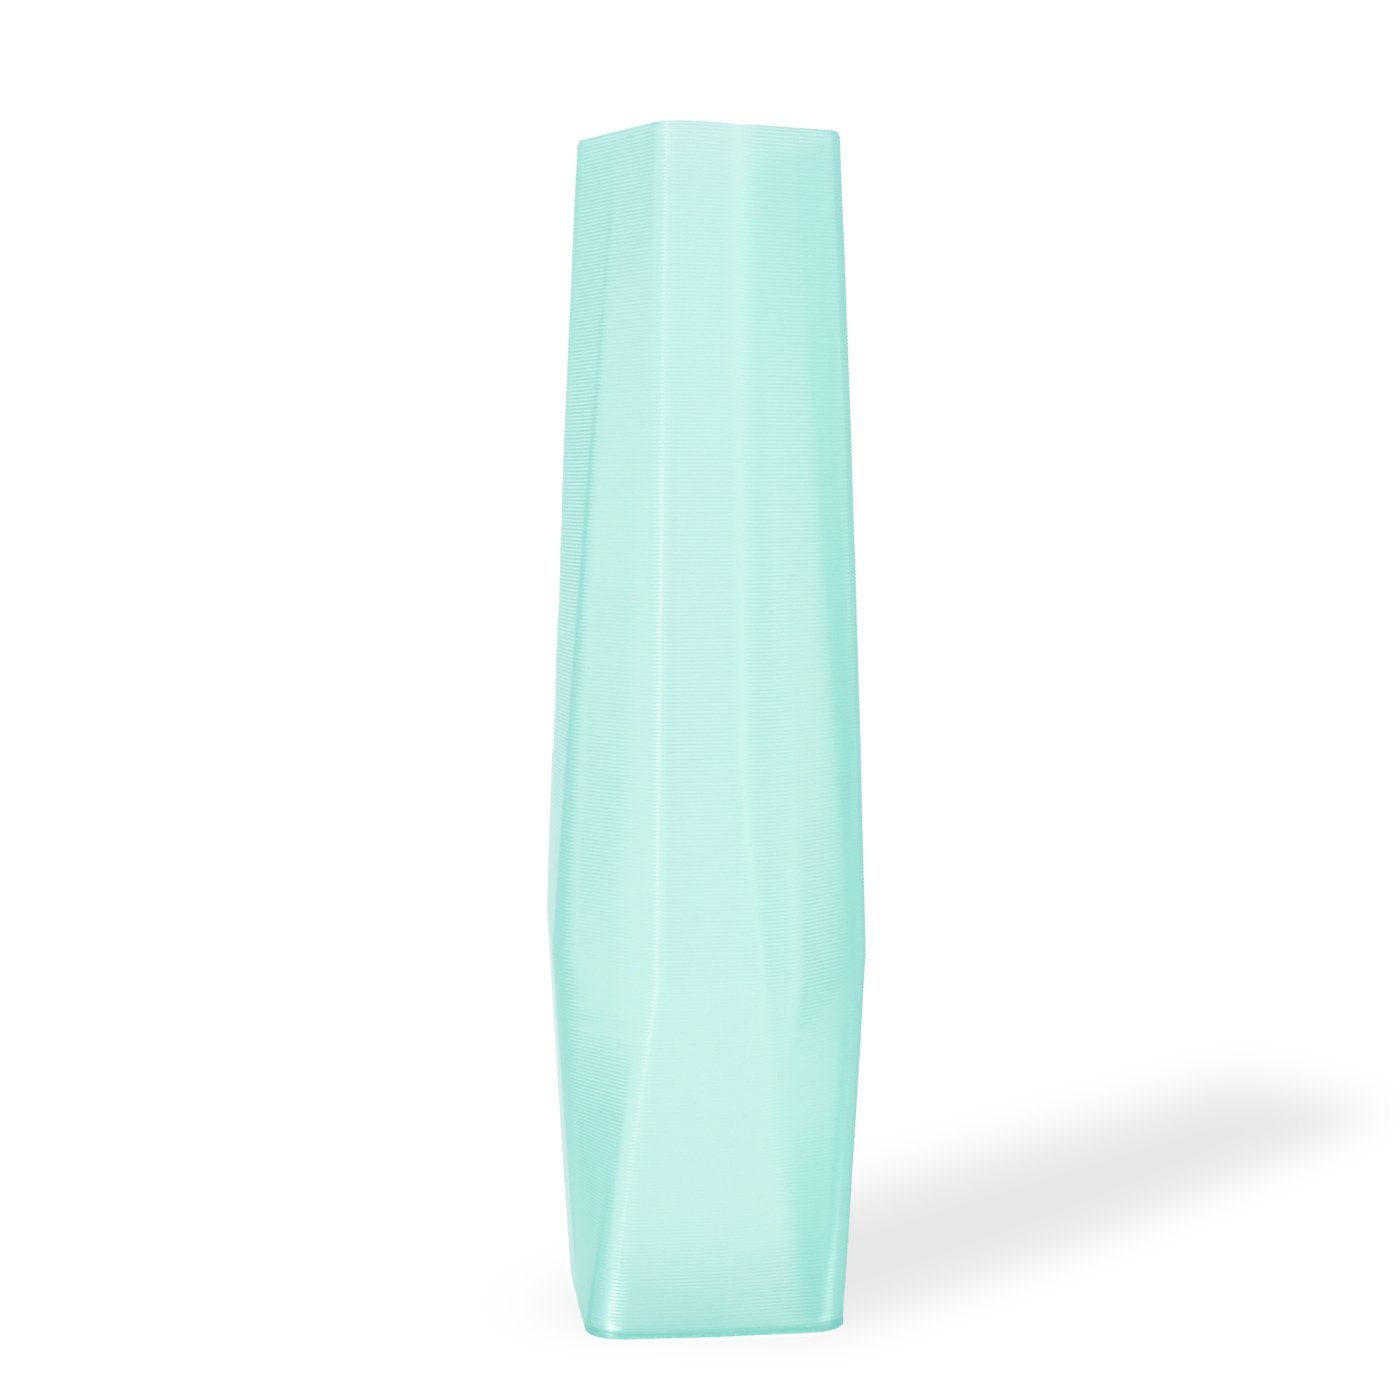 Shapes - Decorations Dekovase the vase - square (deco), 3D Vasen, viele Farben, 100% 3D-Druck (Einzelmodell, 1 Vase), Durchsichtig; Leichte Struktur innerhalb des Materials (Rillung) Mintgrün